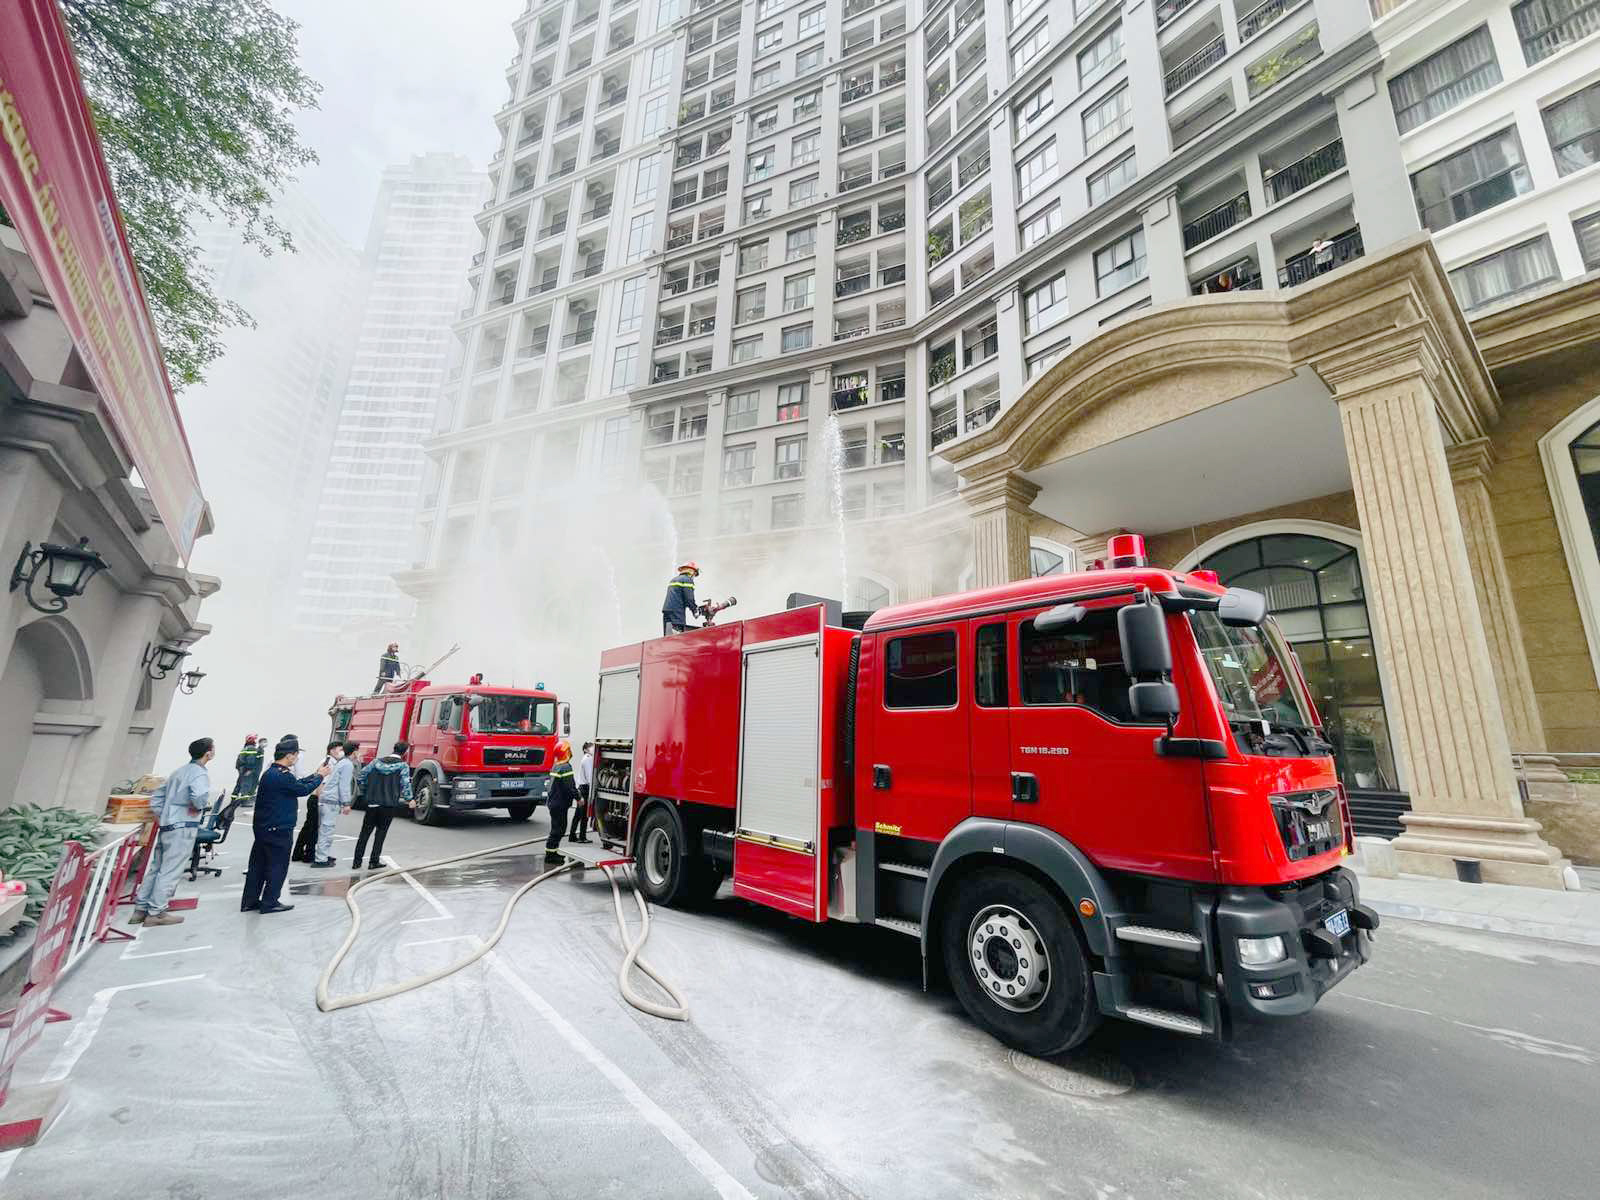 TPHCM dự kiến diễn tập phương án xử lý cháy nổ tại cháy, sự cố, tai nạn tại các công trình thuộc tuyến đường sắt đô thị TP nói chung và Nhà ga ngầm trung tâm Bến Thành nói riêng. 